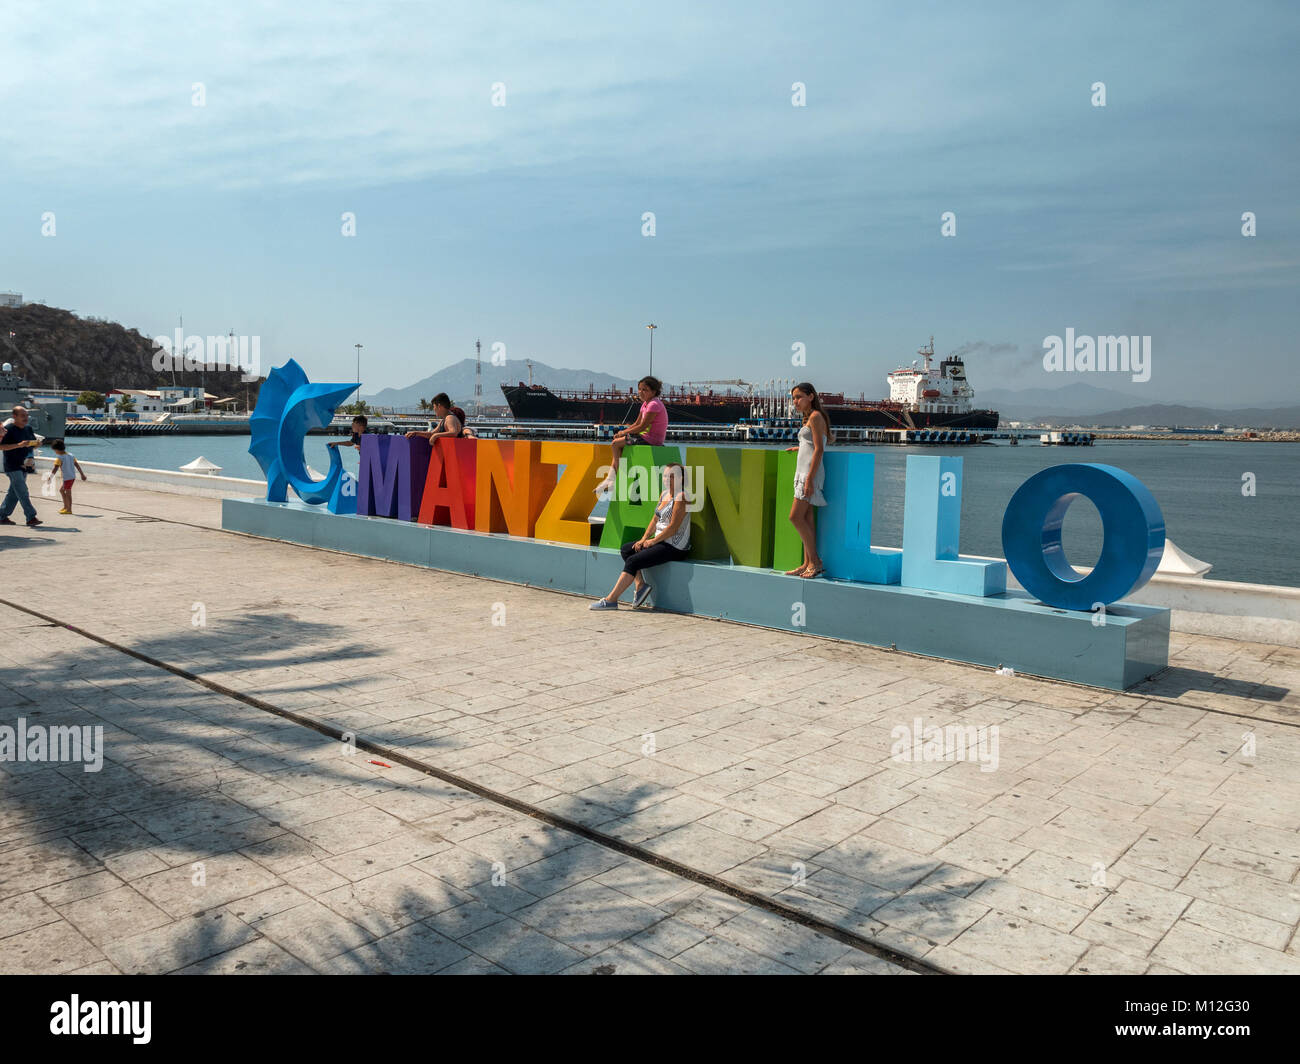 Eine Familie posieren für Fotos an der Manzanillo bunte Touristische Schild an der Waterfront von Manzanillo Colima Mexiko Stockfoto